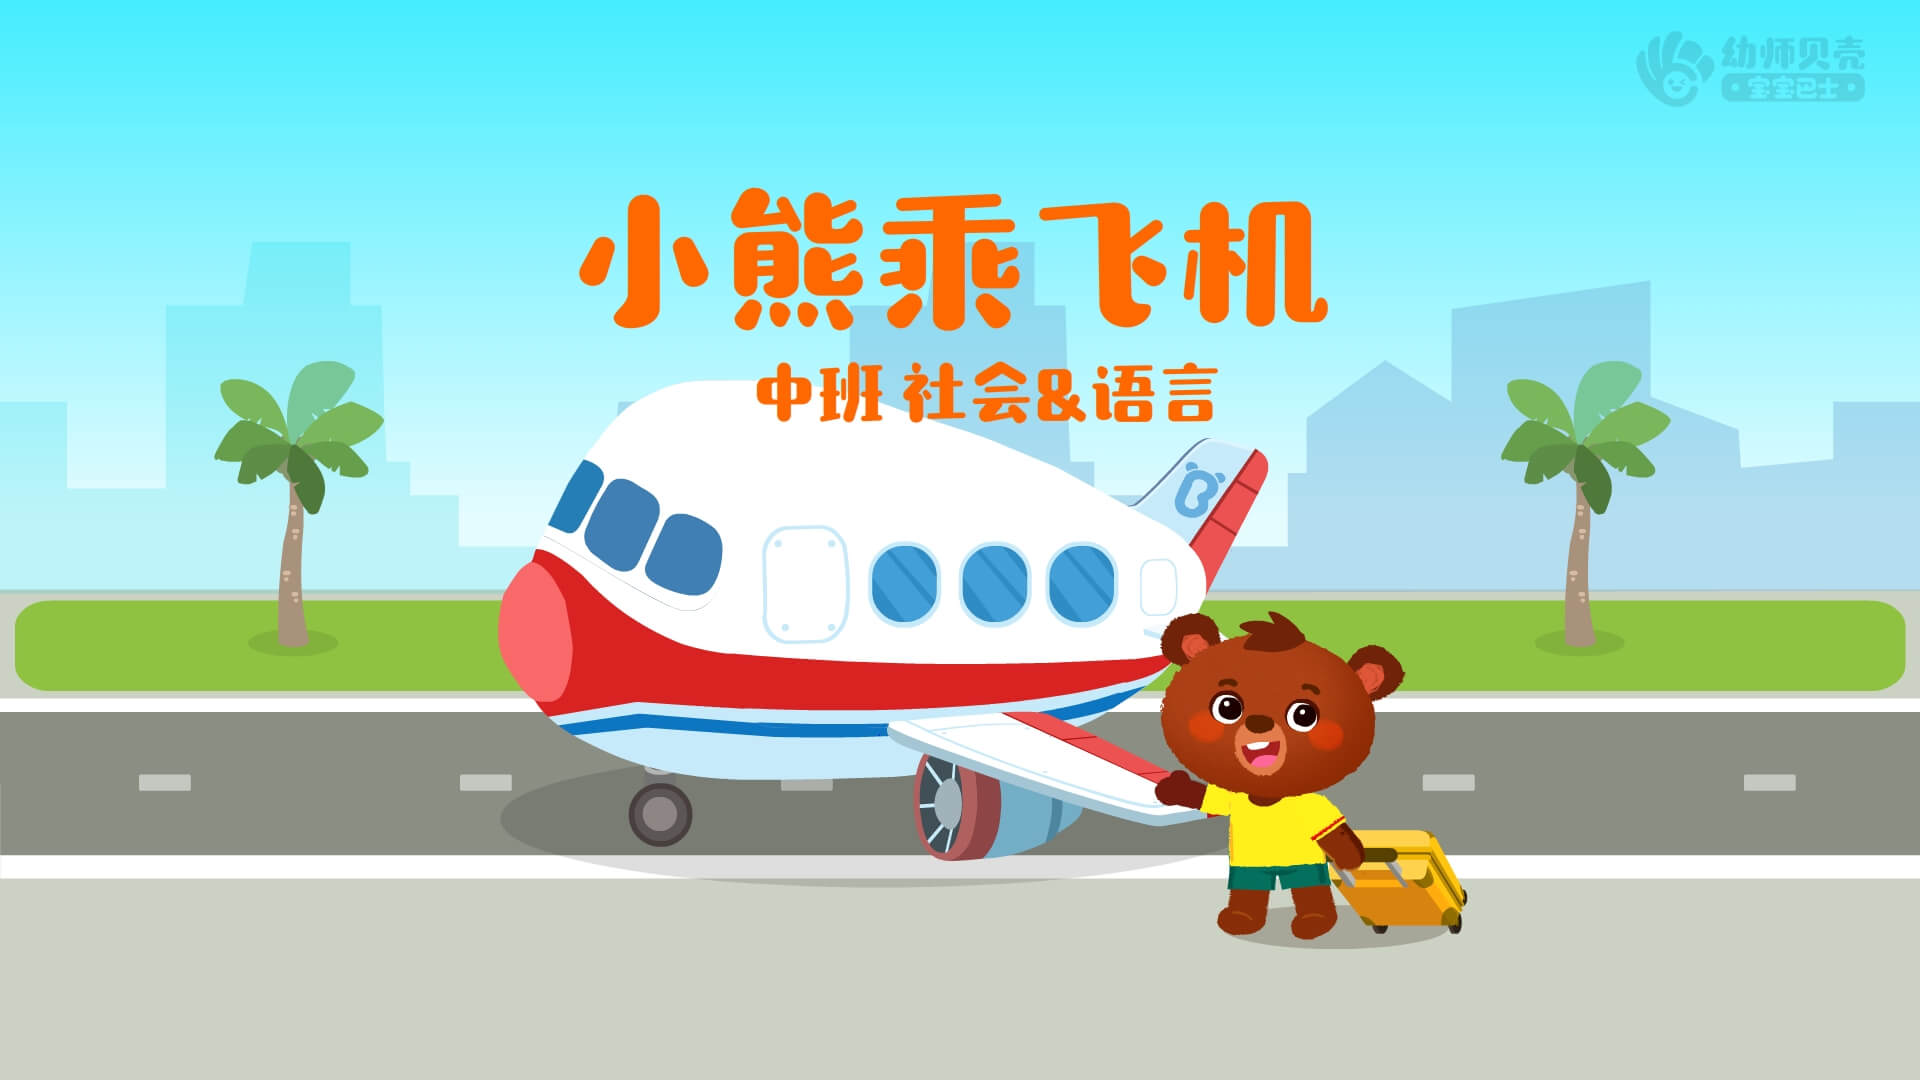 中班小熊乘飞机